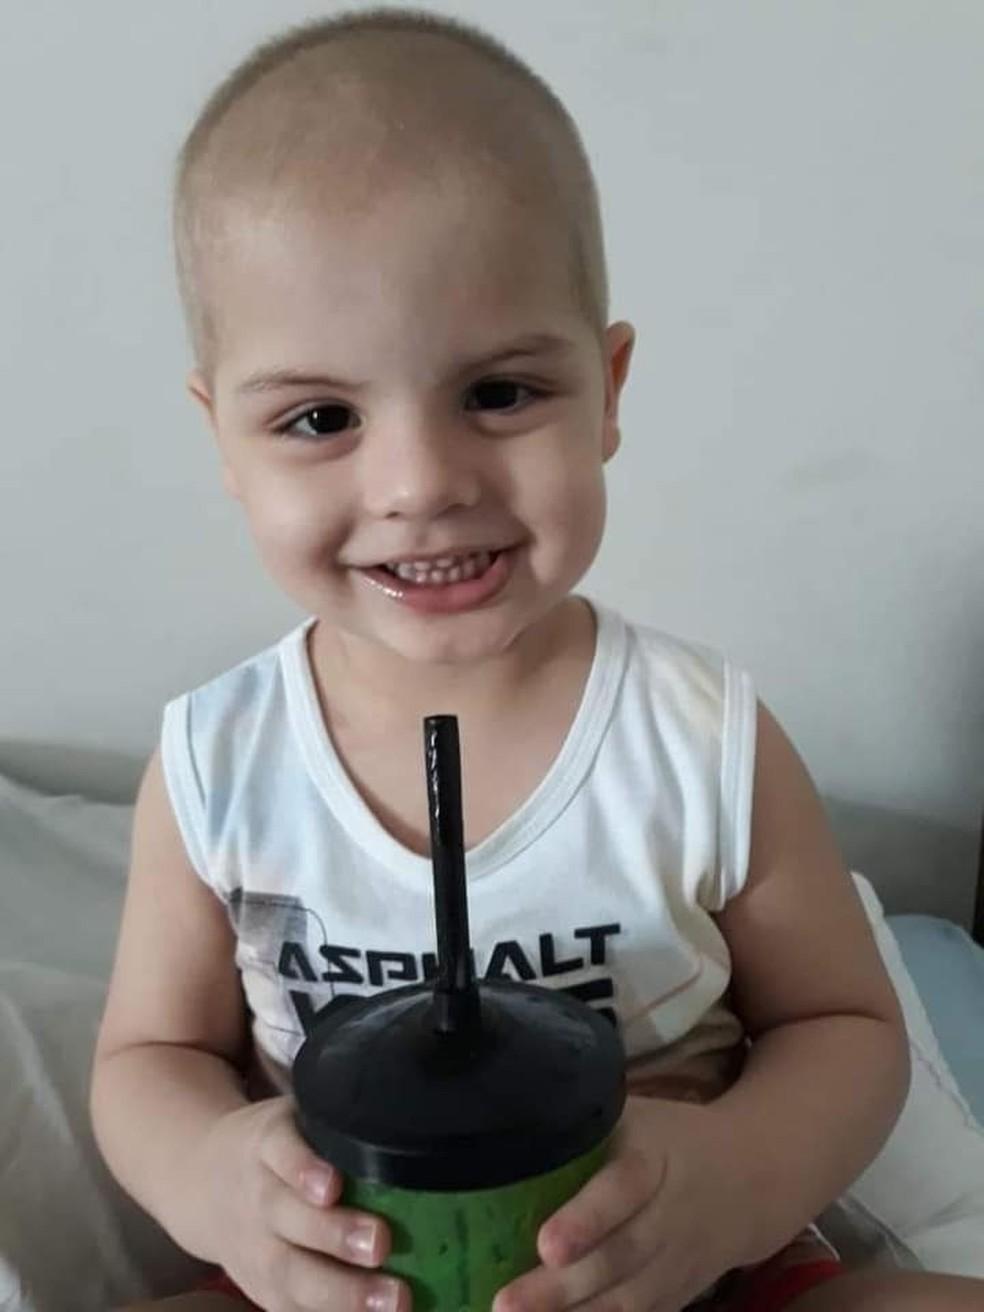 Família faz campanha para encontrar doador de medula óssea para menino de 5 anos